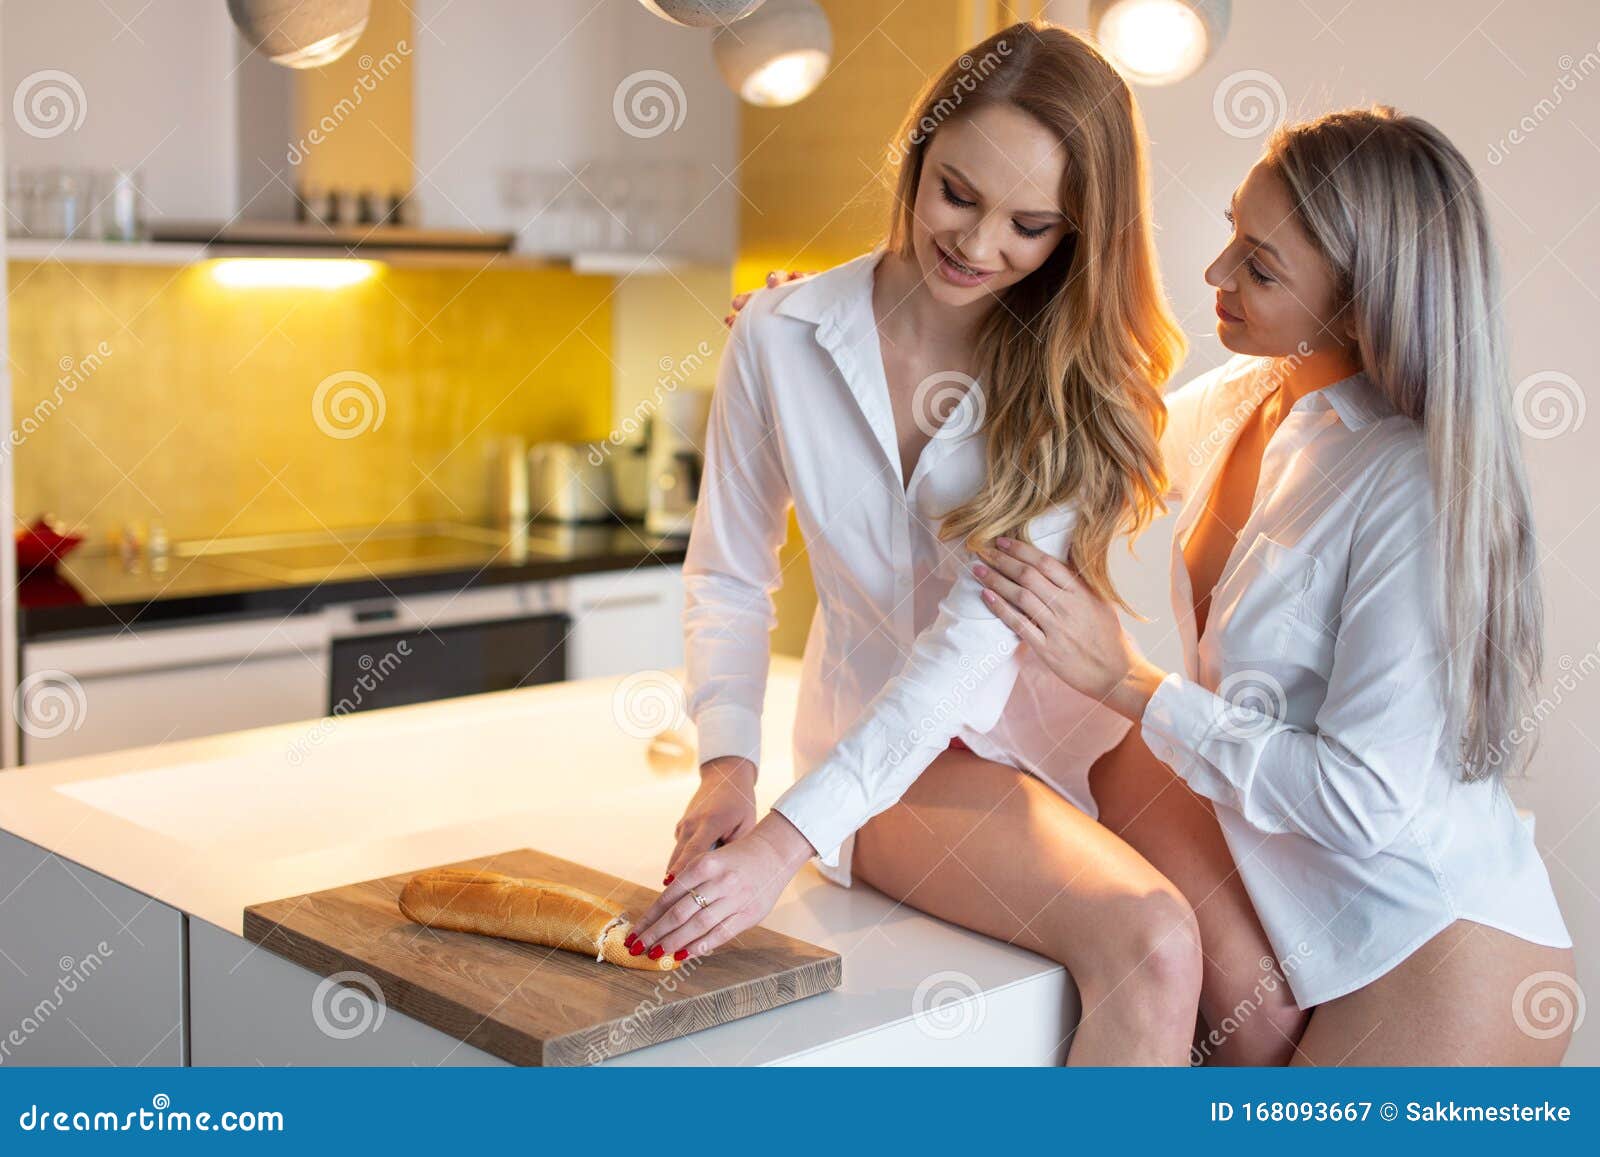 Joven Lesbiana Con Camisa Blanca Preparando Comida En La Cocina Con Novia  Imagen de archivo - Imagen de identidad, igualdad: 168093667